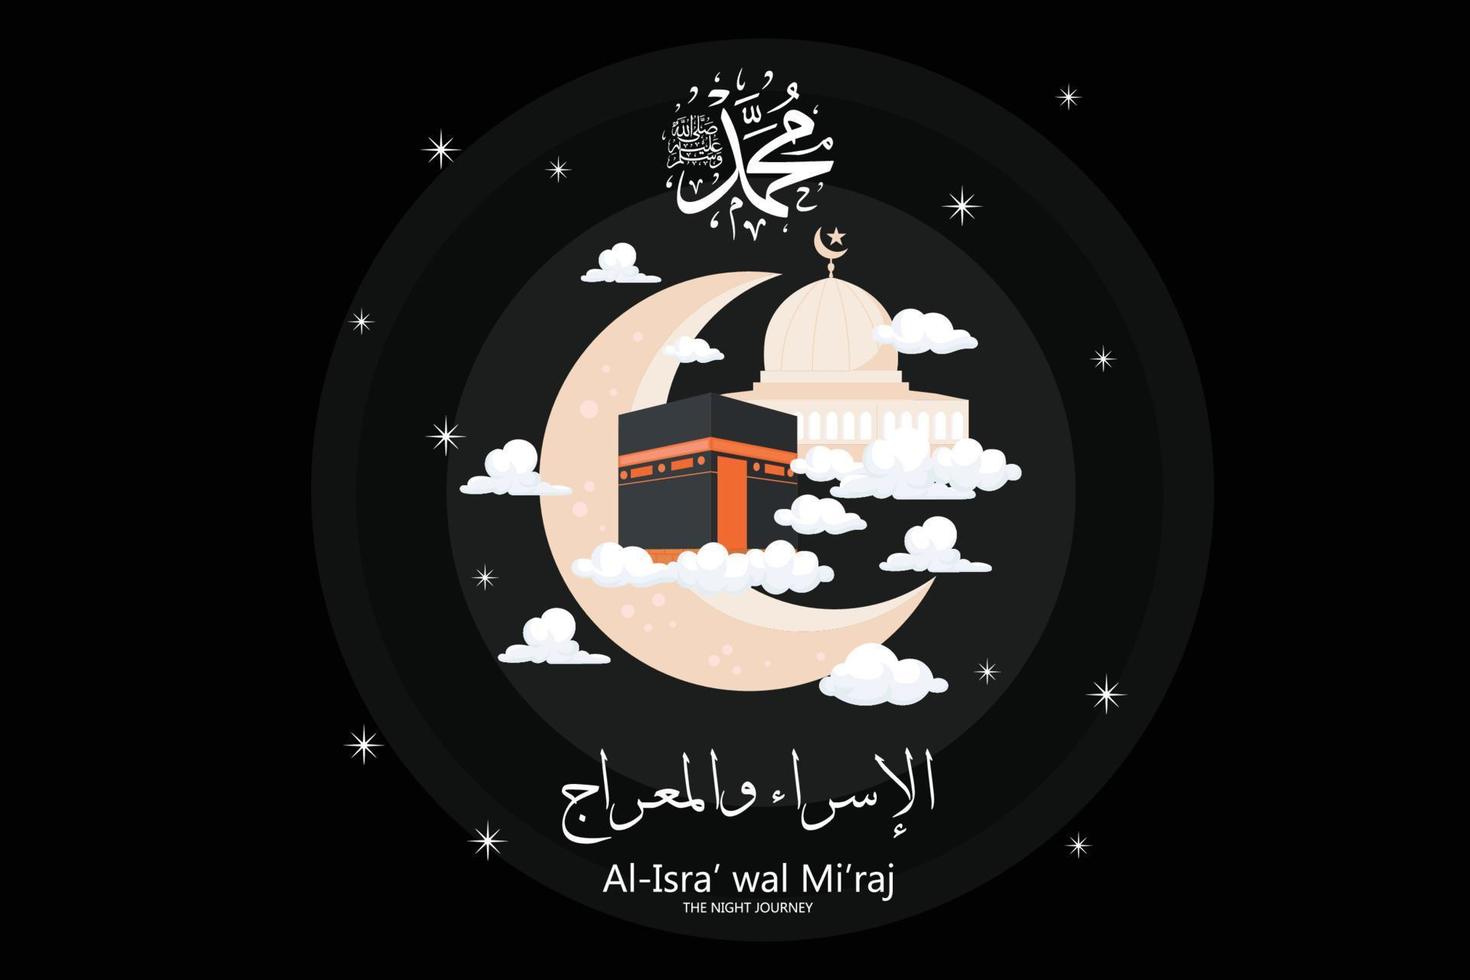 isra und mi'raj geschrieben in arabischer islamischer kalligrafie. übersetzung ist isra und mi'raj sind die beiden teile einer nachtreise nach islam, flacher vektor moderne illustration